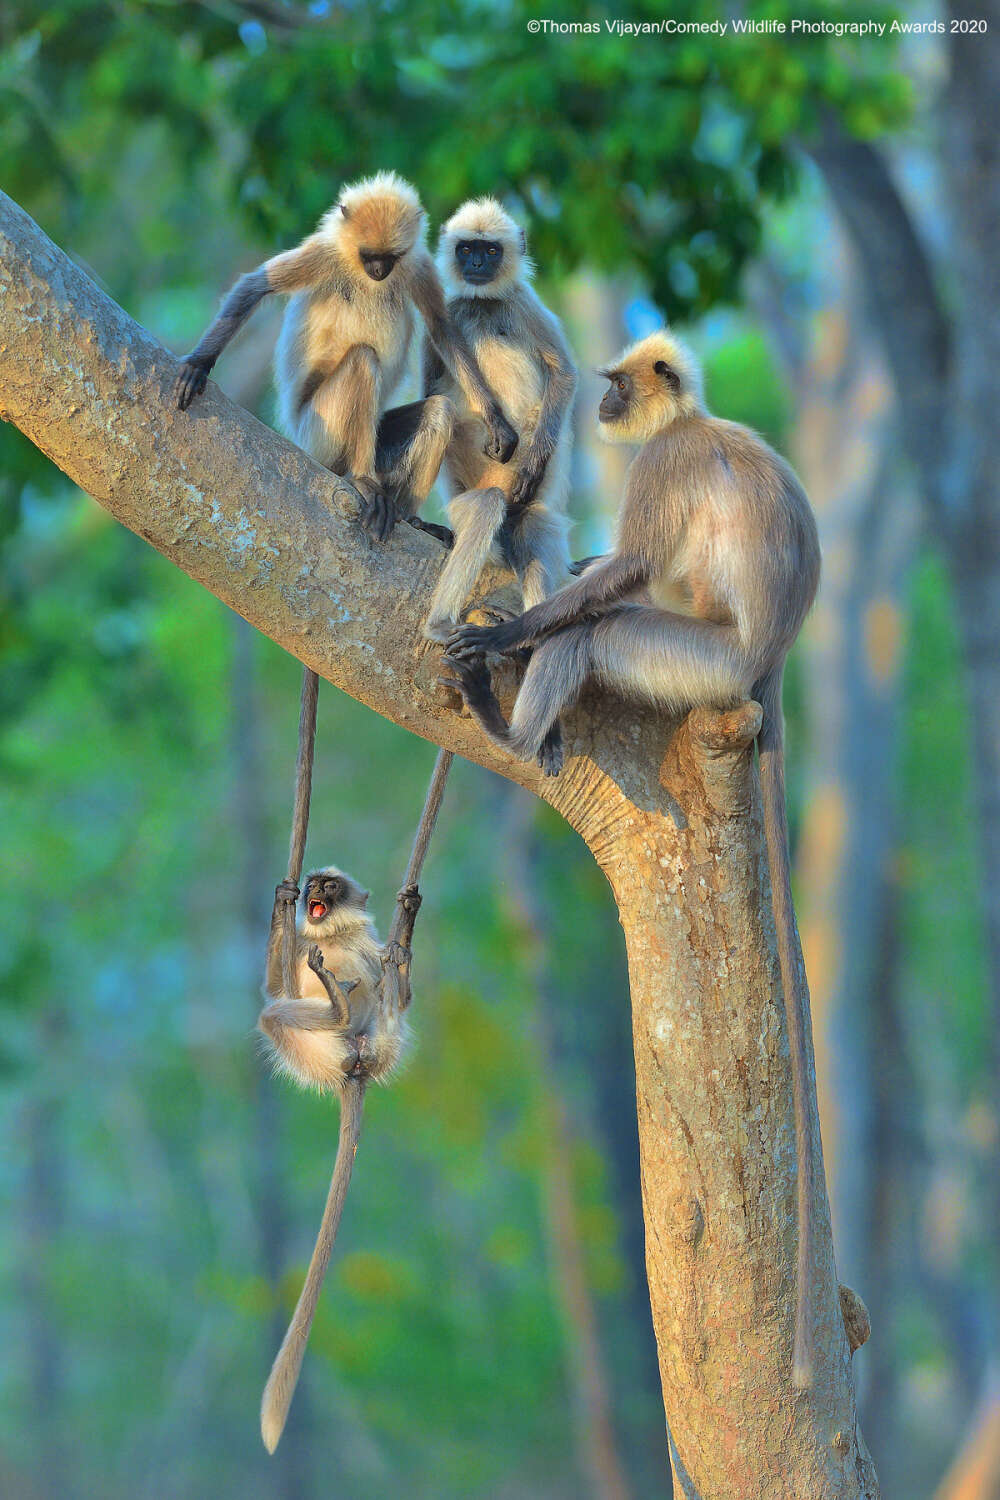 animal behaviour - Thomas VijayanComedy Wildlife Photography Awards 2020